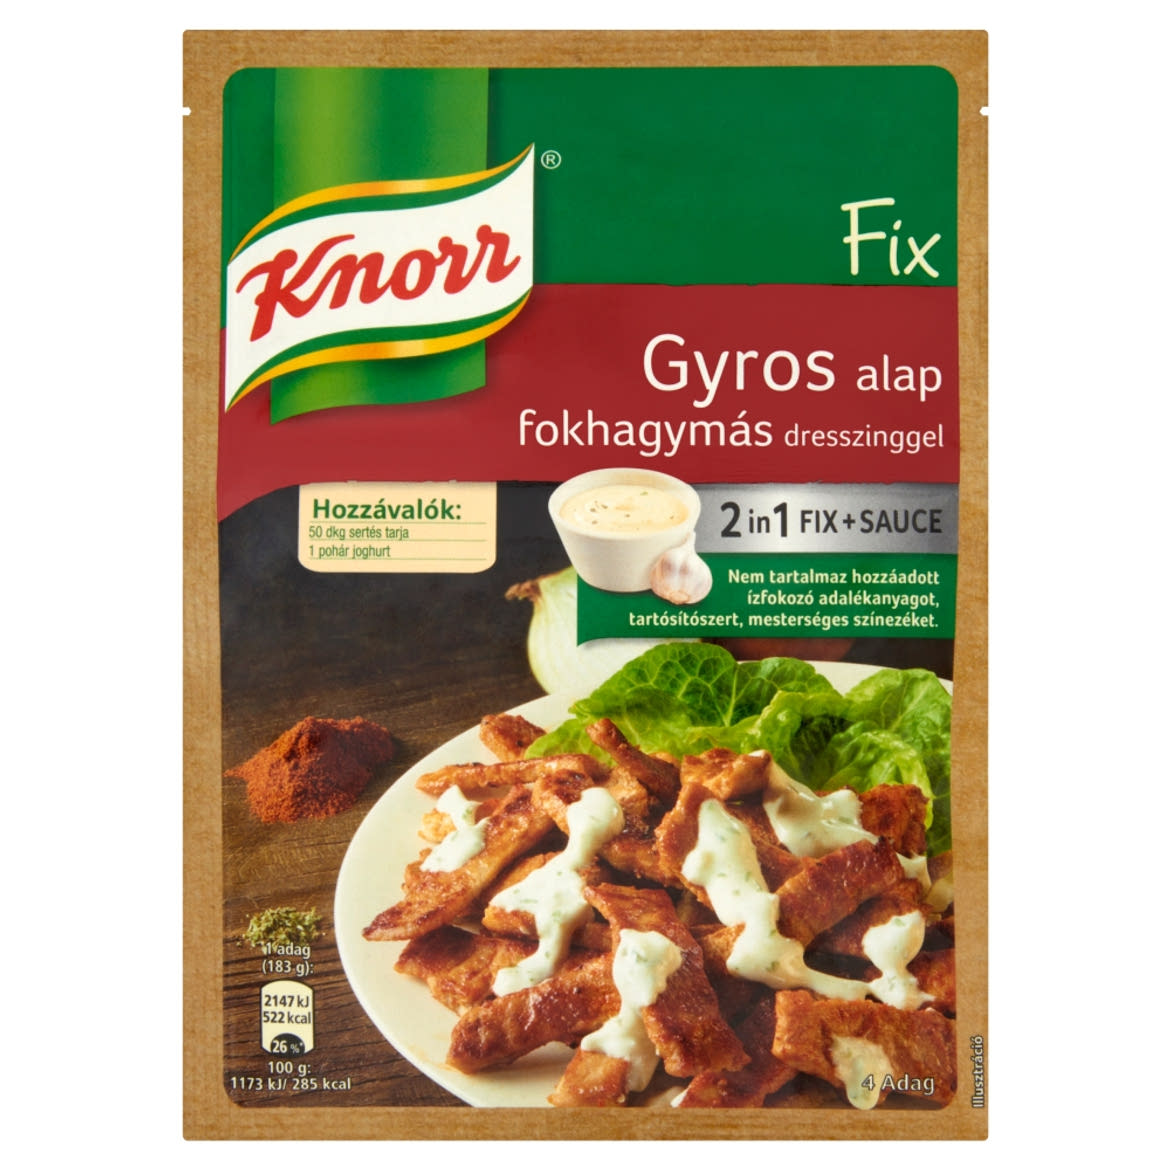 Knorr Fix gyros alap fokhagymás dresszinggel